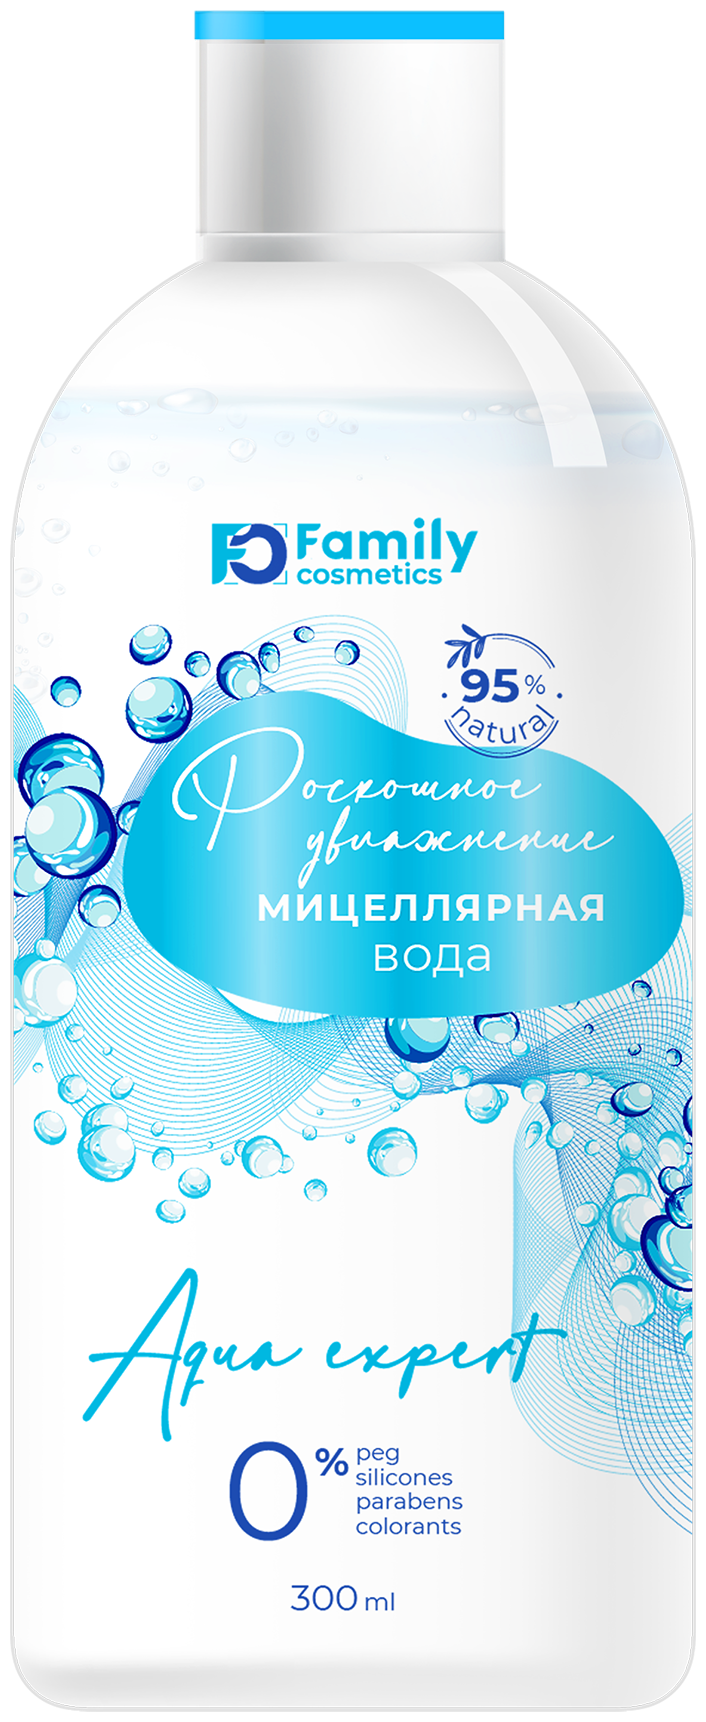 Family cosmetics Мицеллярная вода Роскошное увлажнение